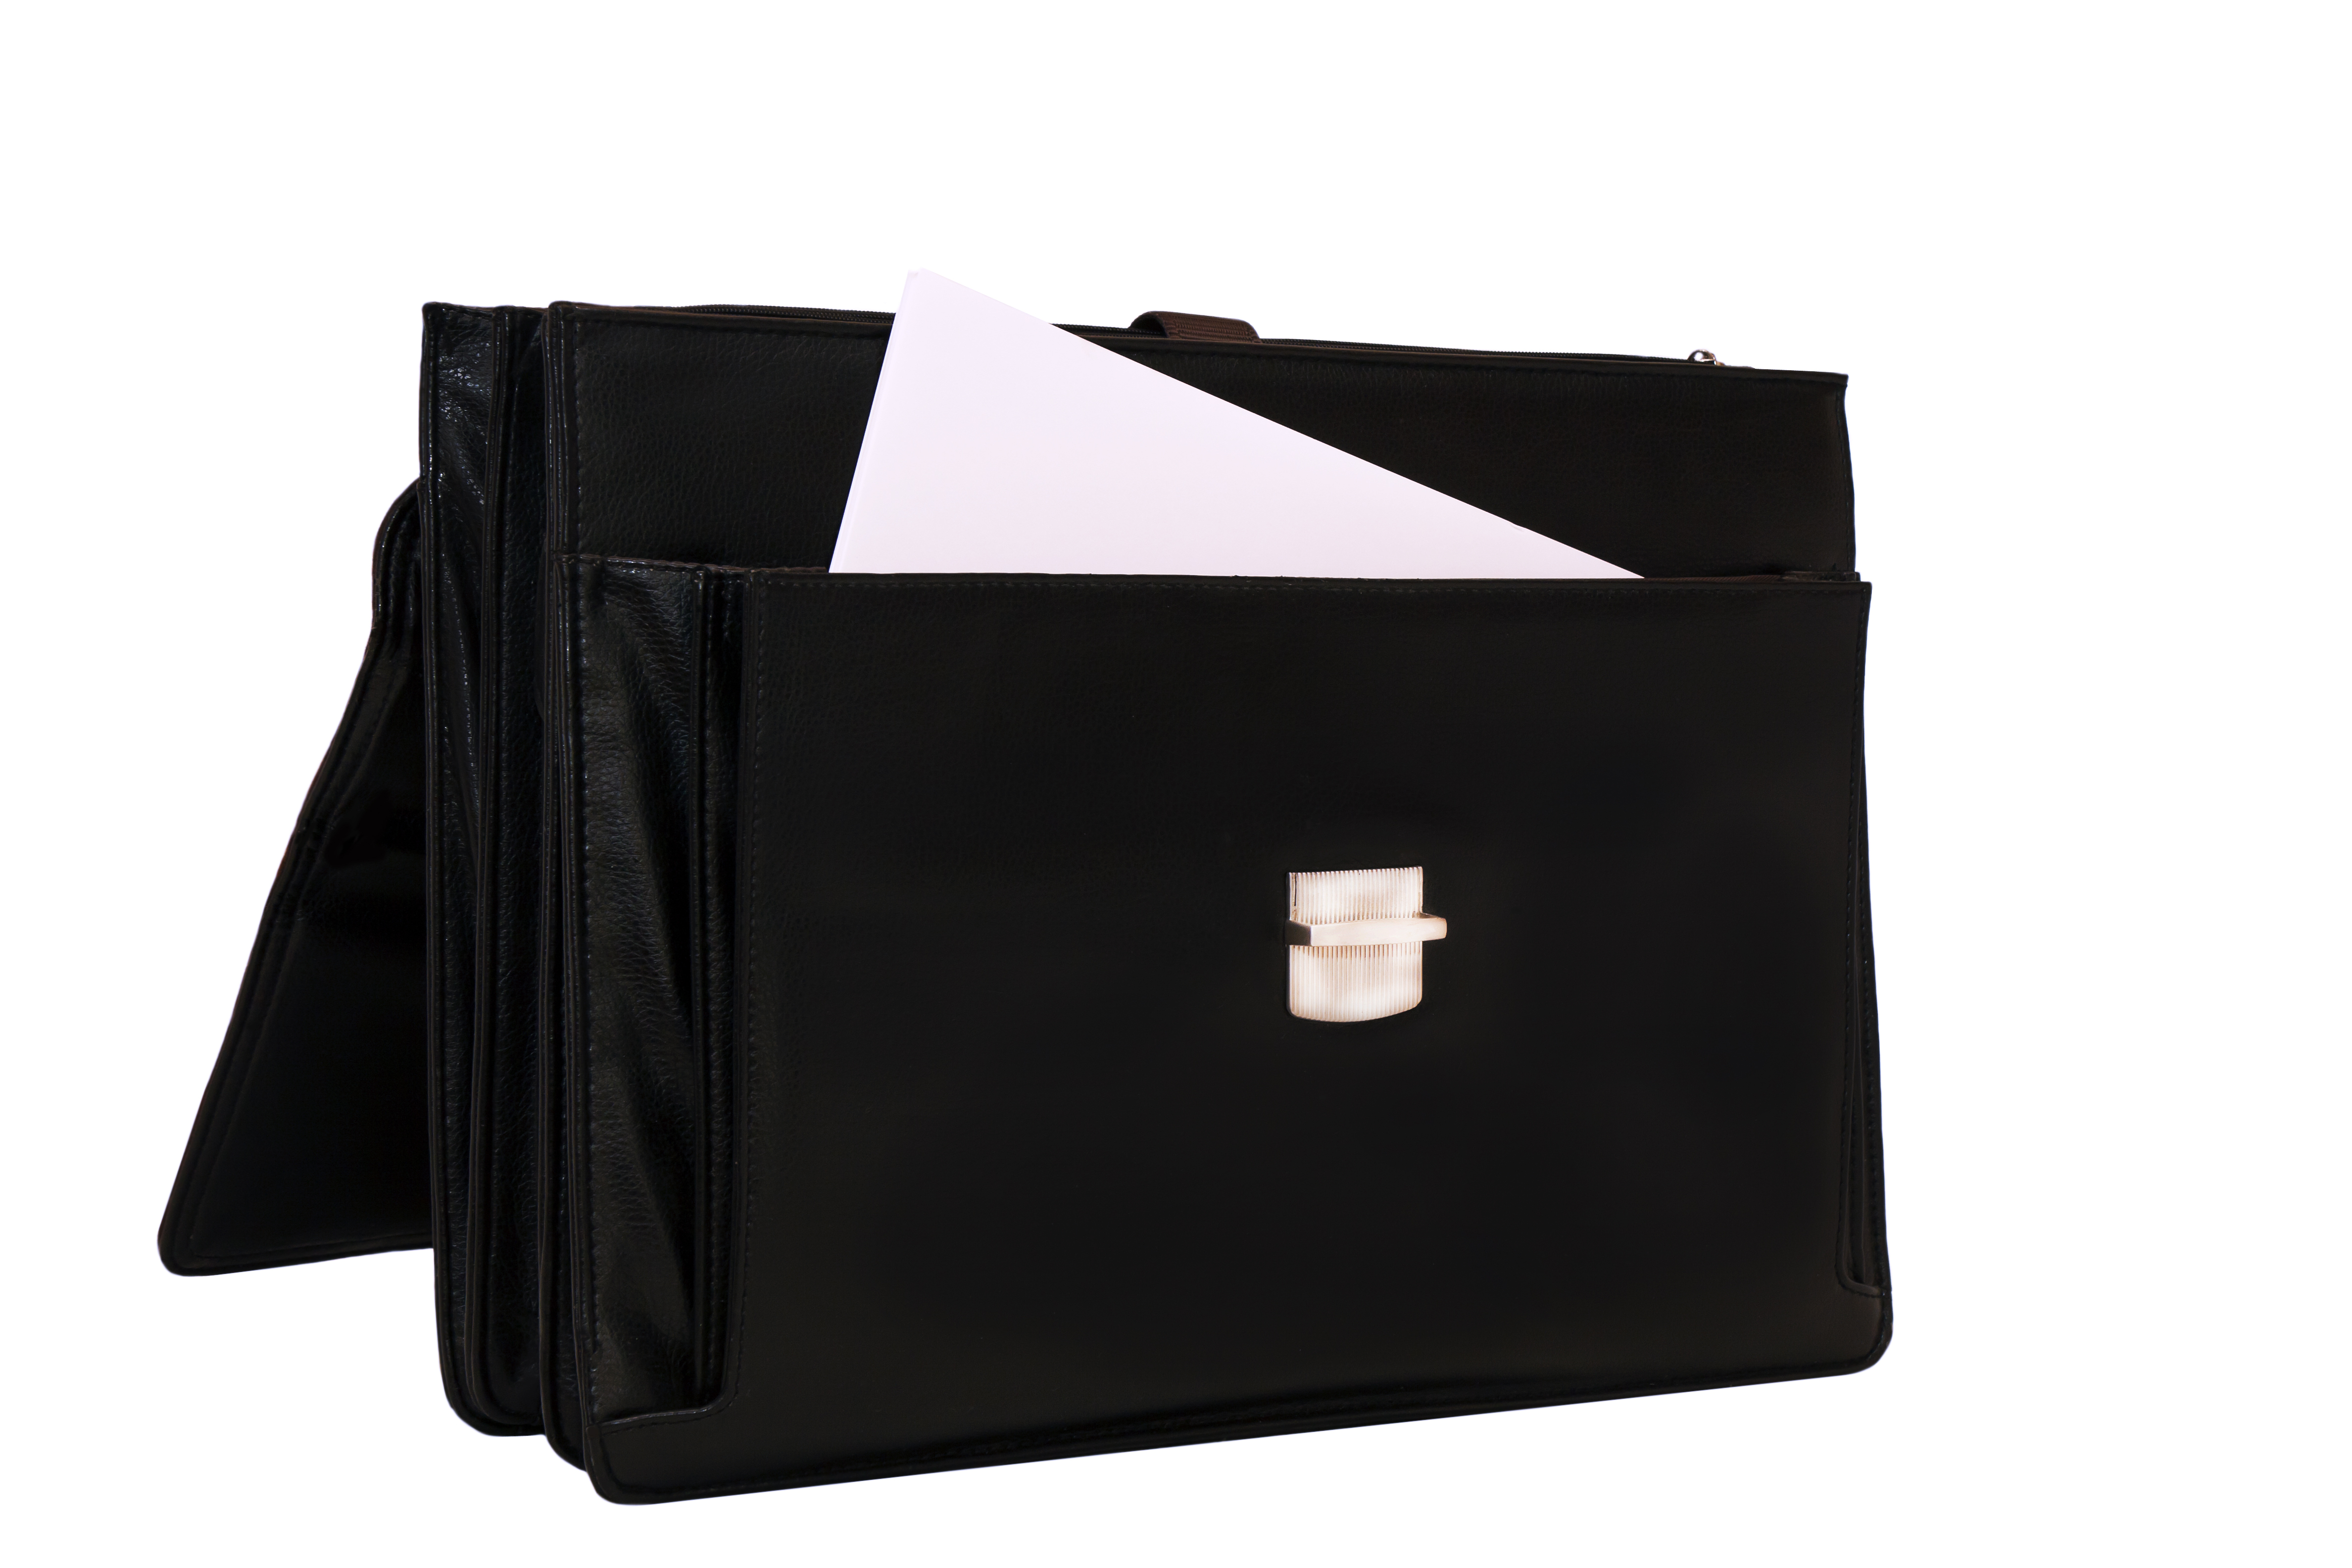 Briefcase | Source: Shutterstock